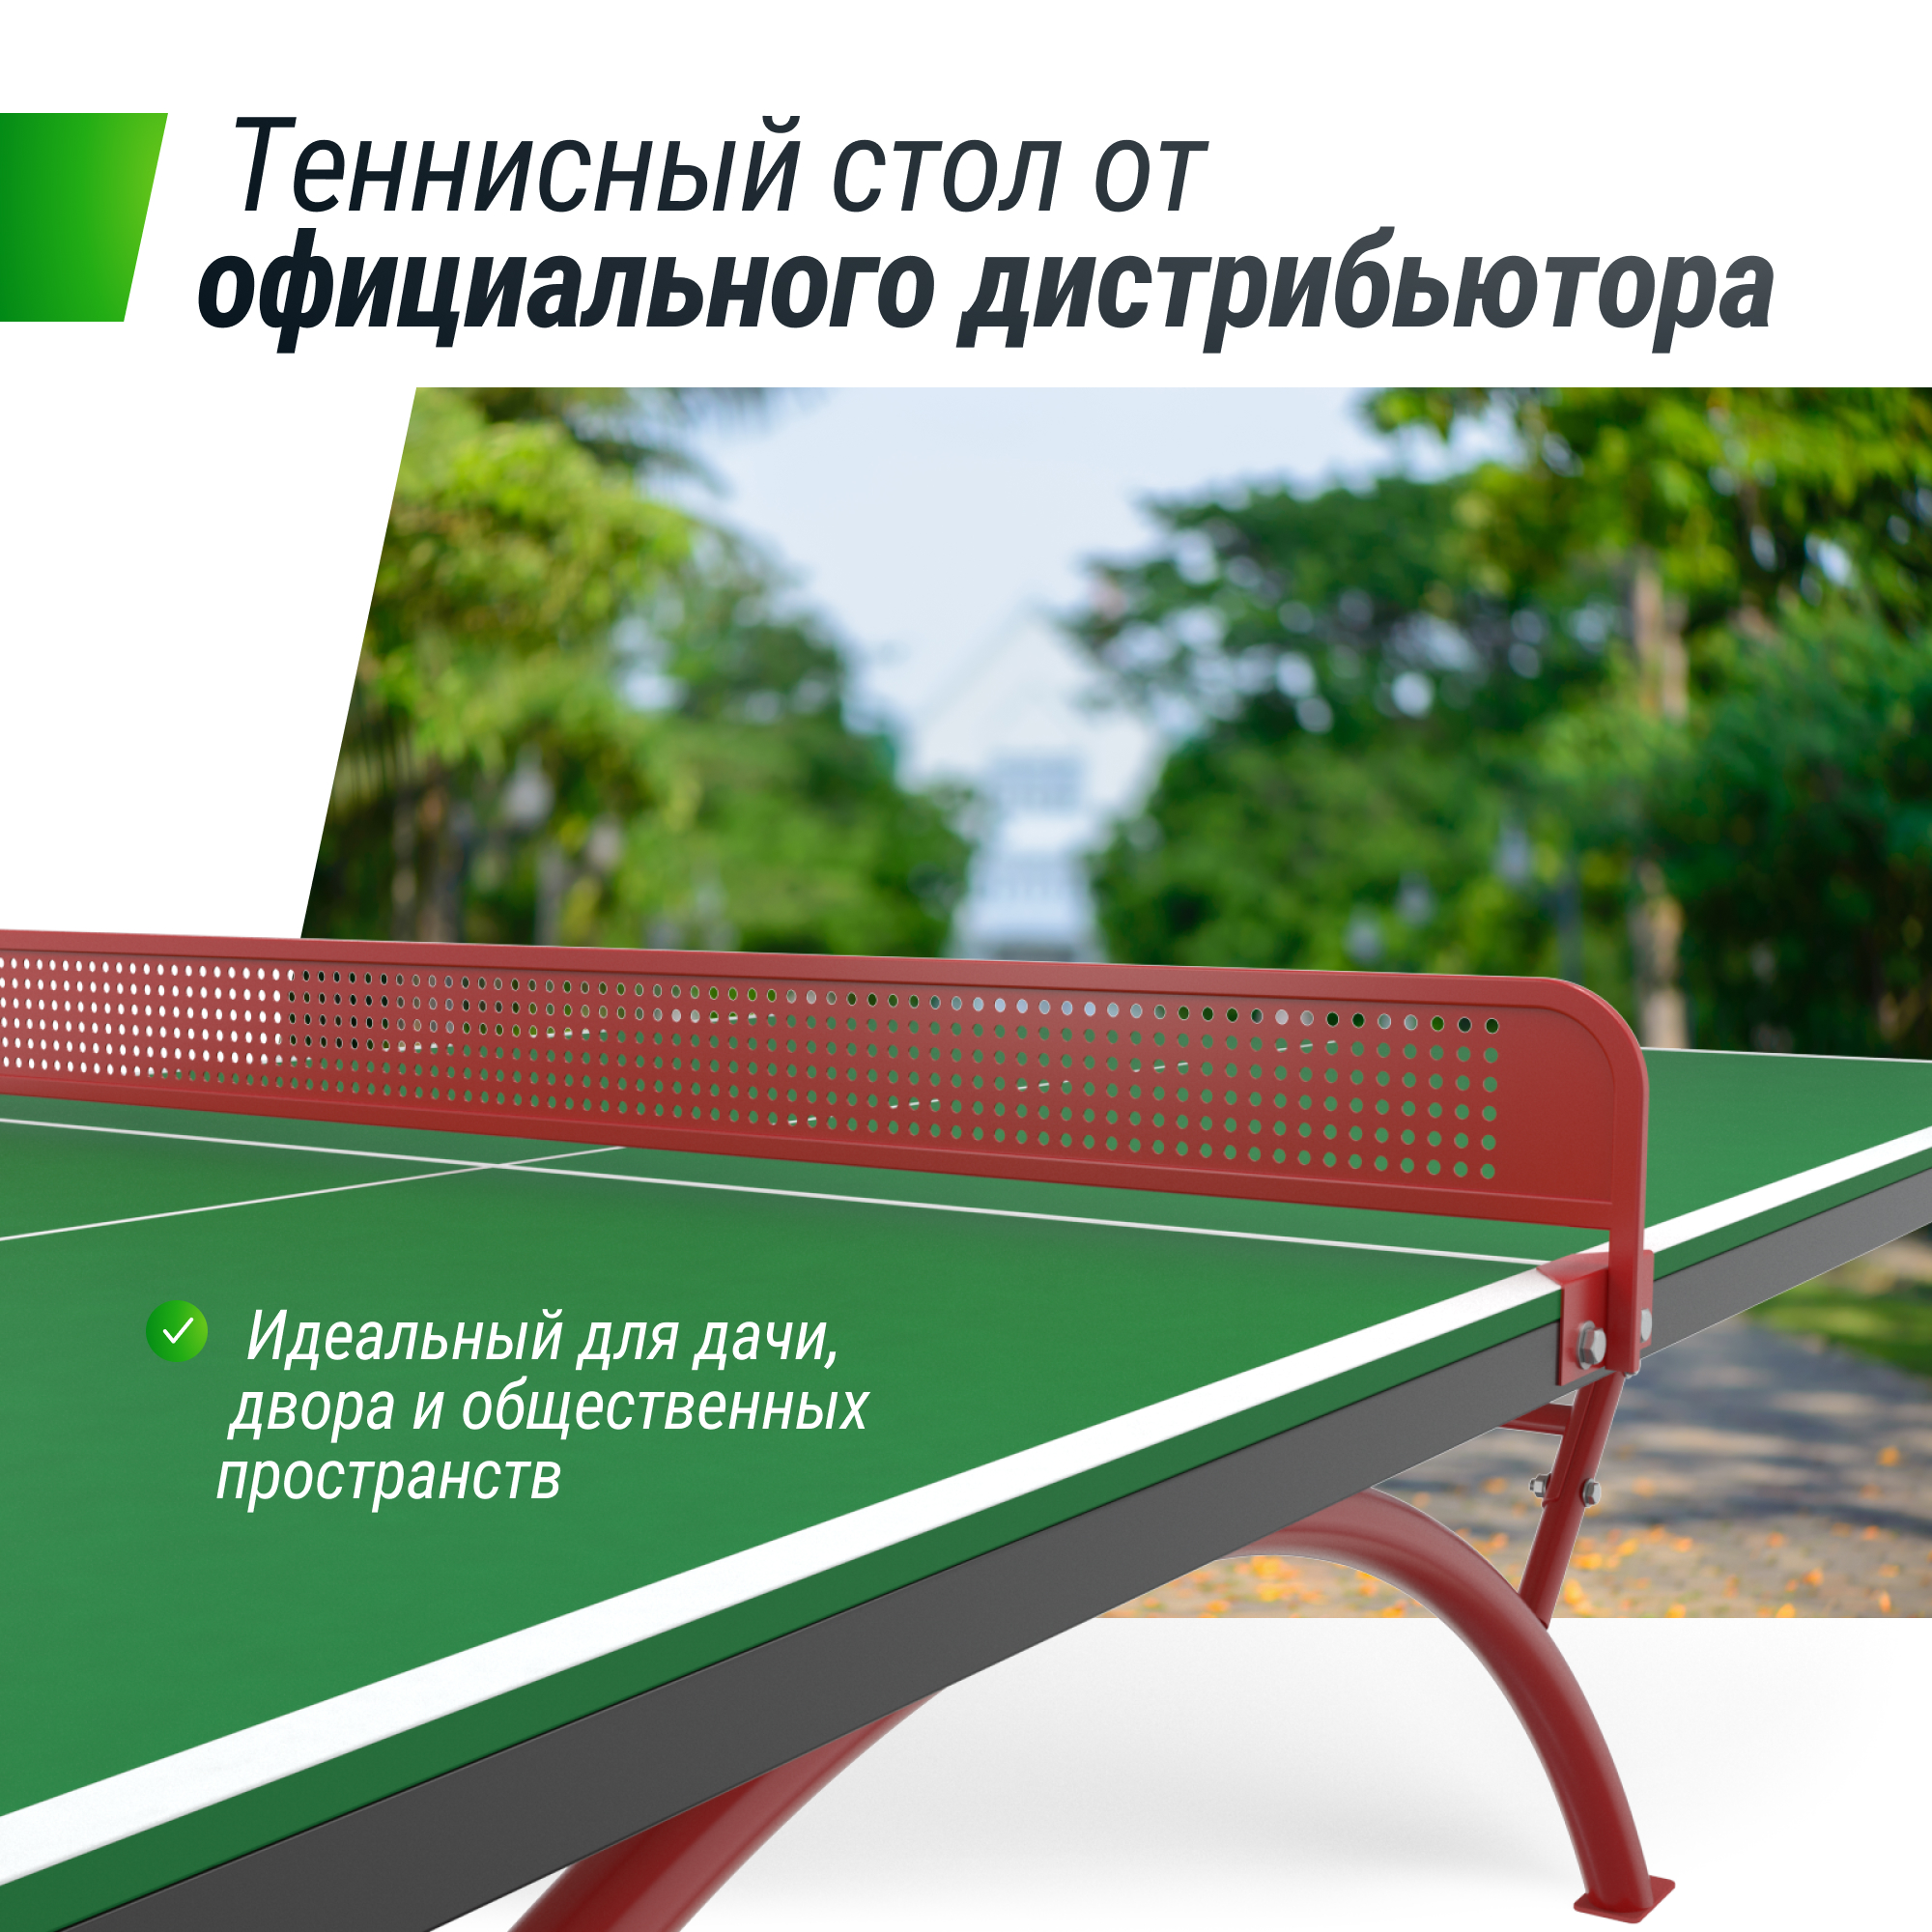 Антивандальный теннисный стол UNIX Line 14 mm SMC (Green/Red) - 5 